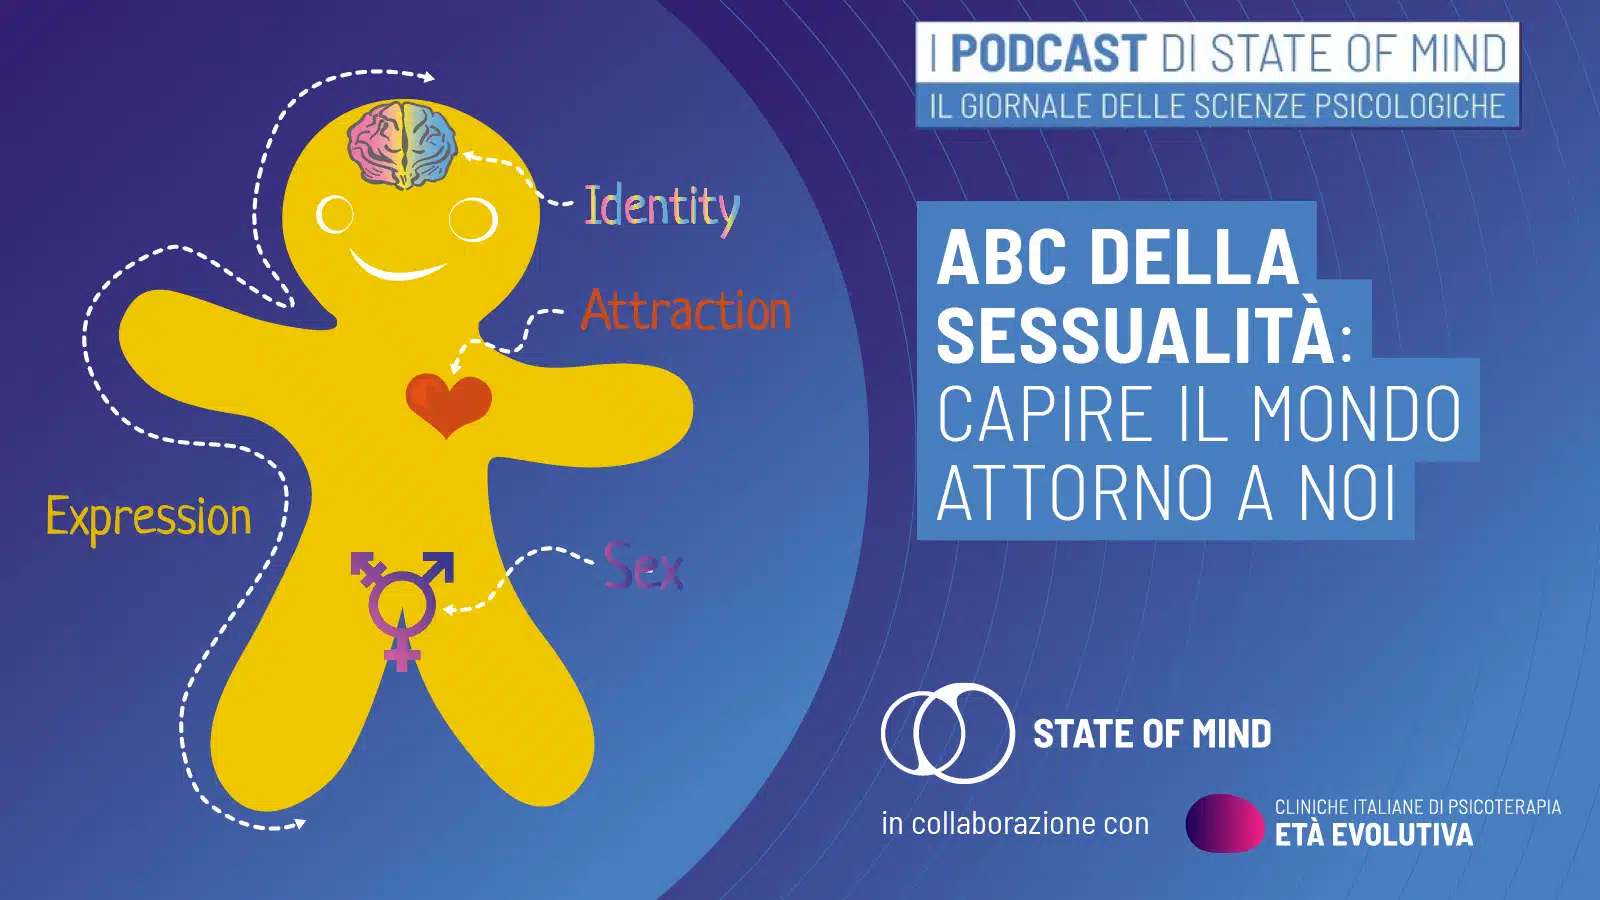 ABC della sessualita capire il mondo attorno a noi - Podcast State of Mind